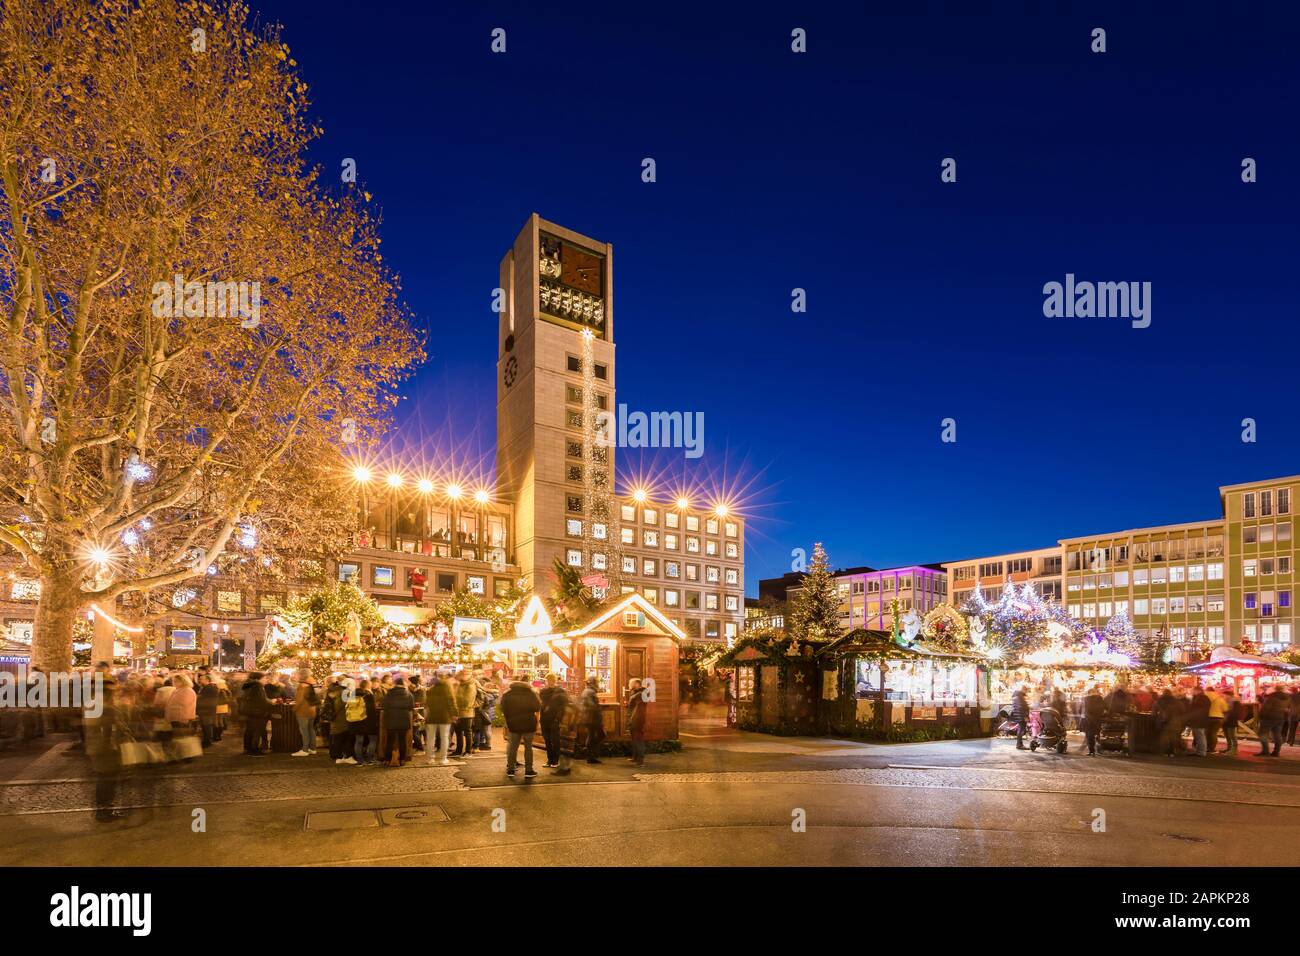 Deutschland, Baden-Württemberg, Stuttgart, Marktplatz, Rathaus, Weihnachtsmarkt, Marktstände Stock Photo